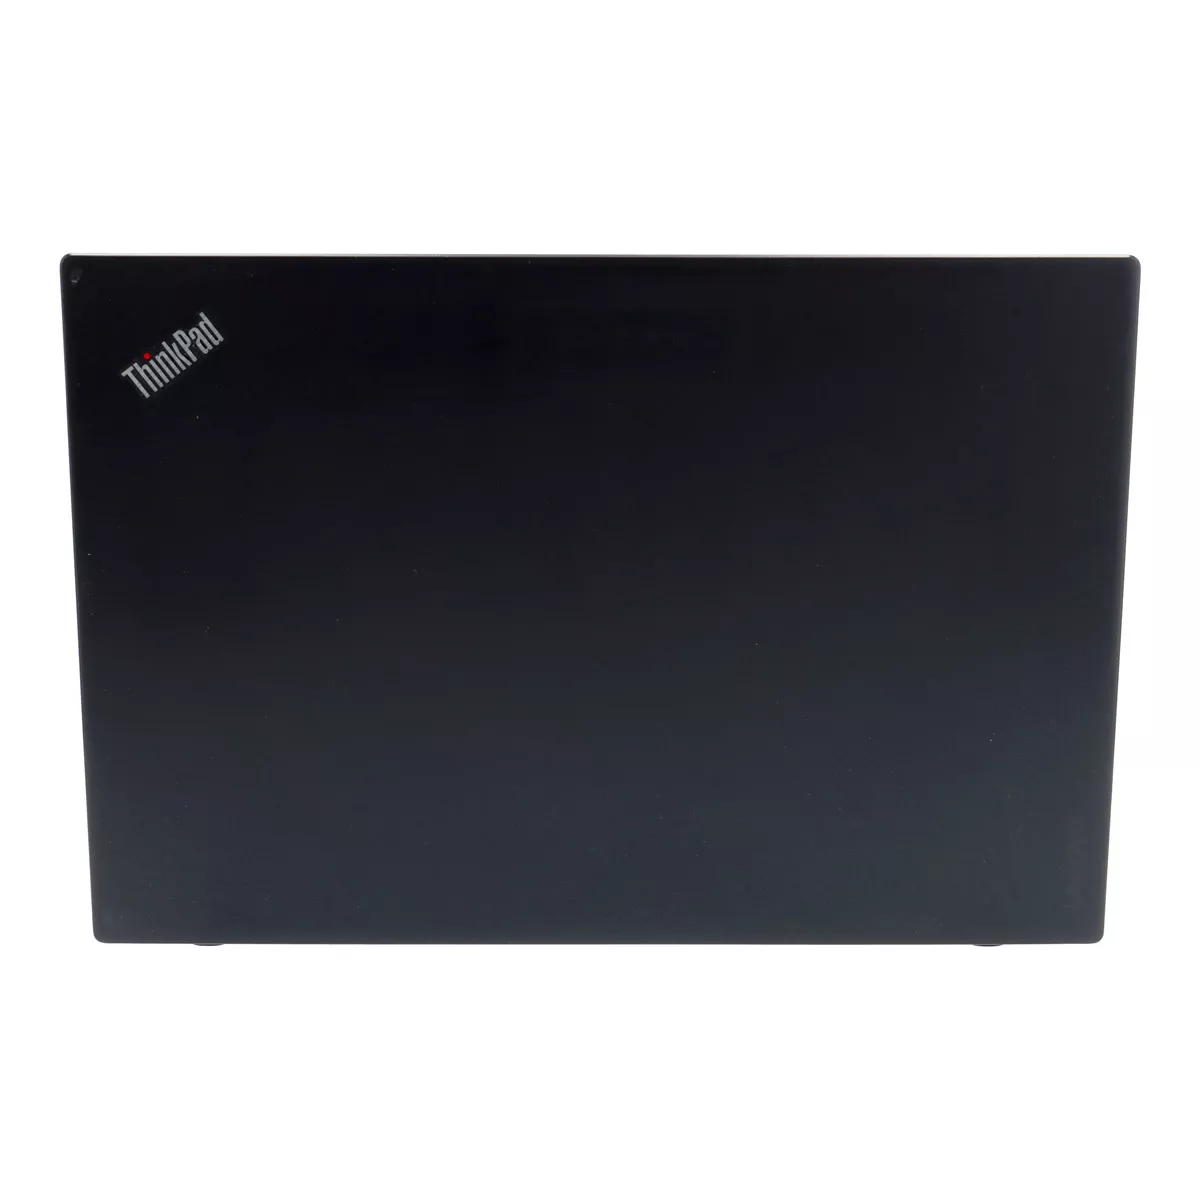 Lenovo ThinkPad T460s Core i5 6300U Full-HD 8 GB 256 GB SSD Webcam B-Ware